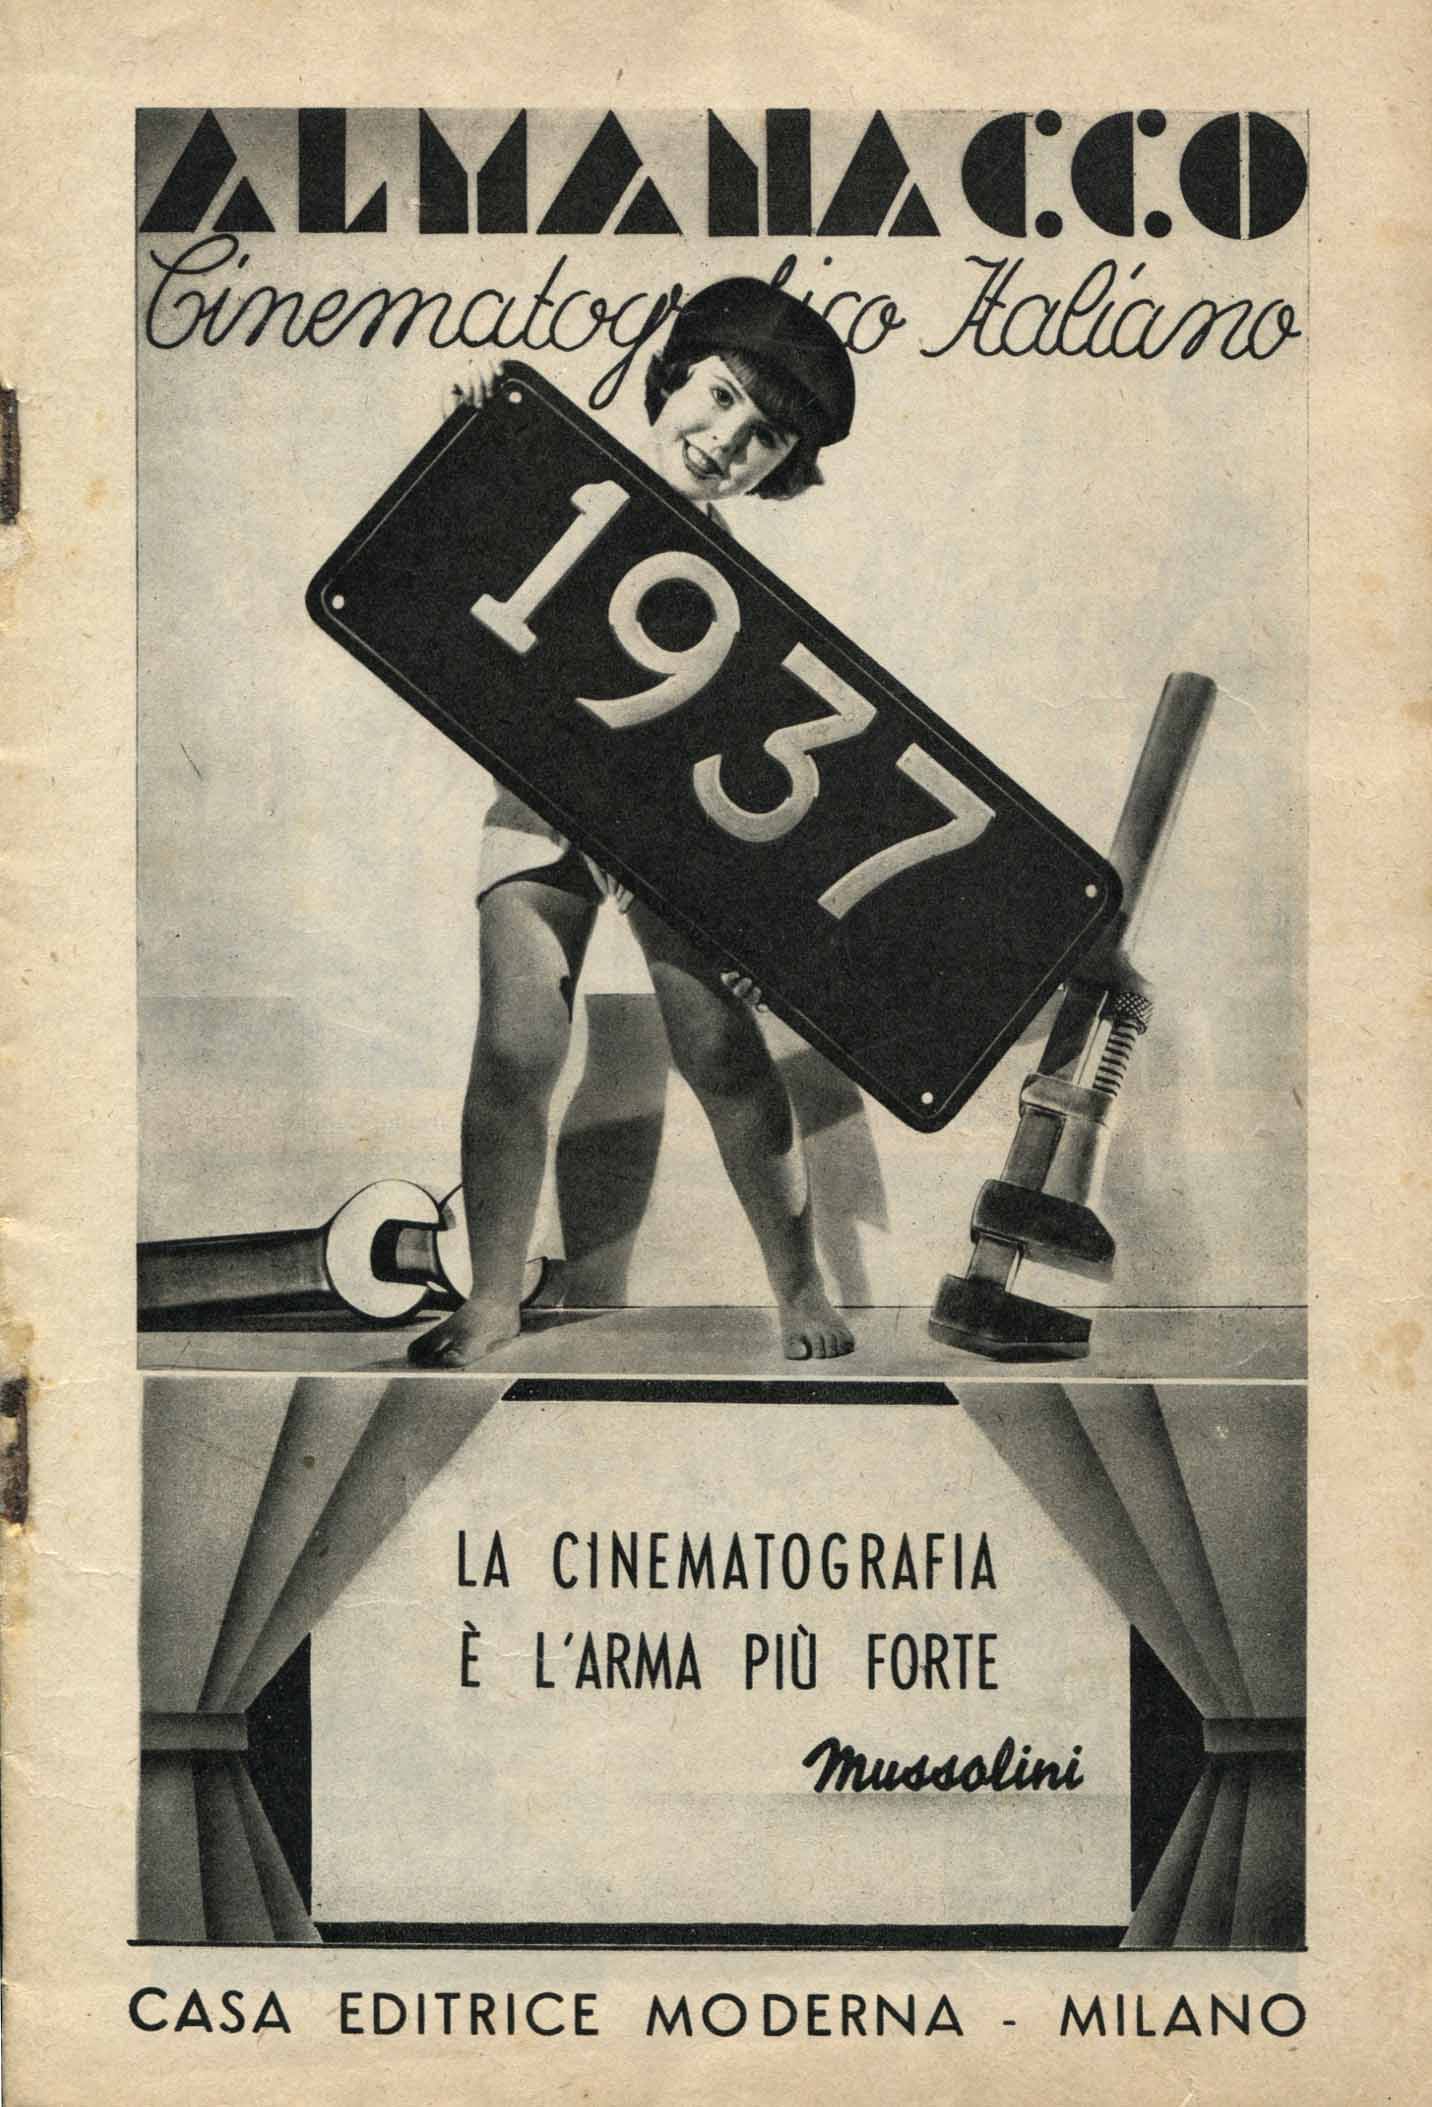 Almanacco Cinematografico Italiano